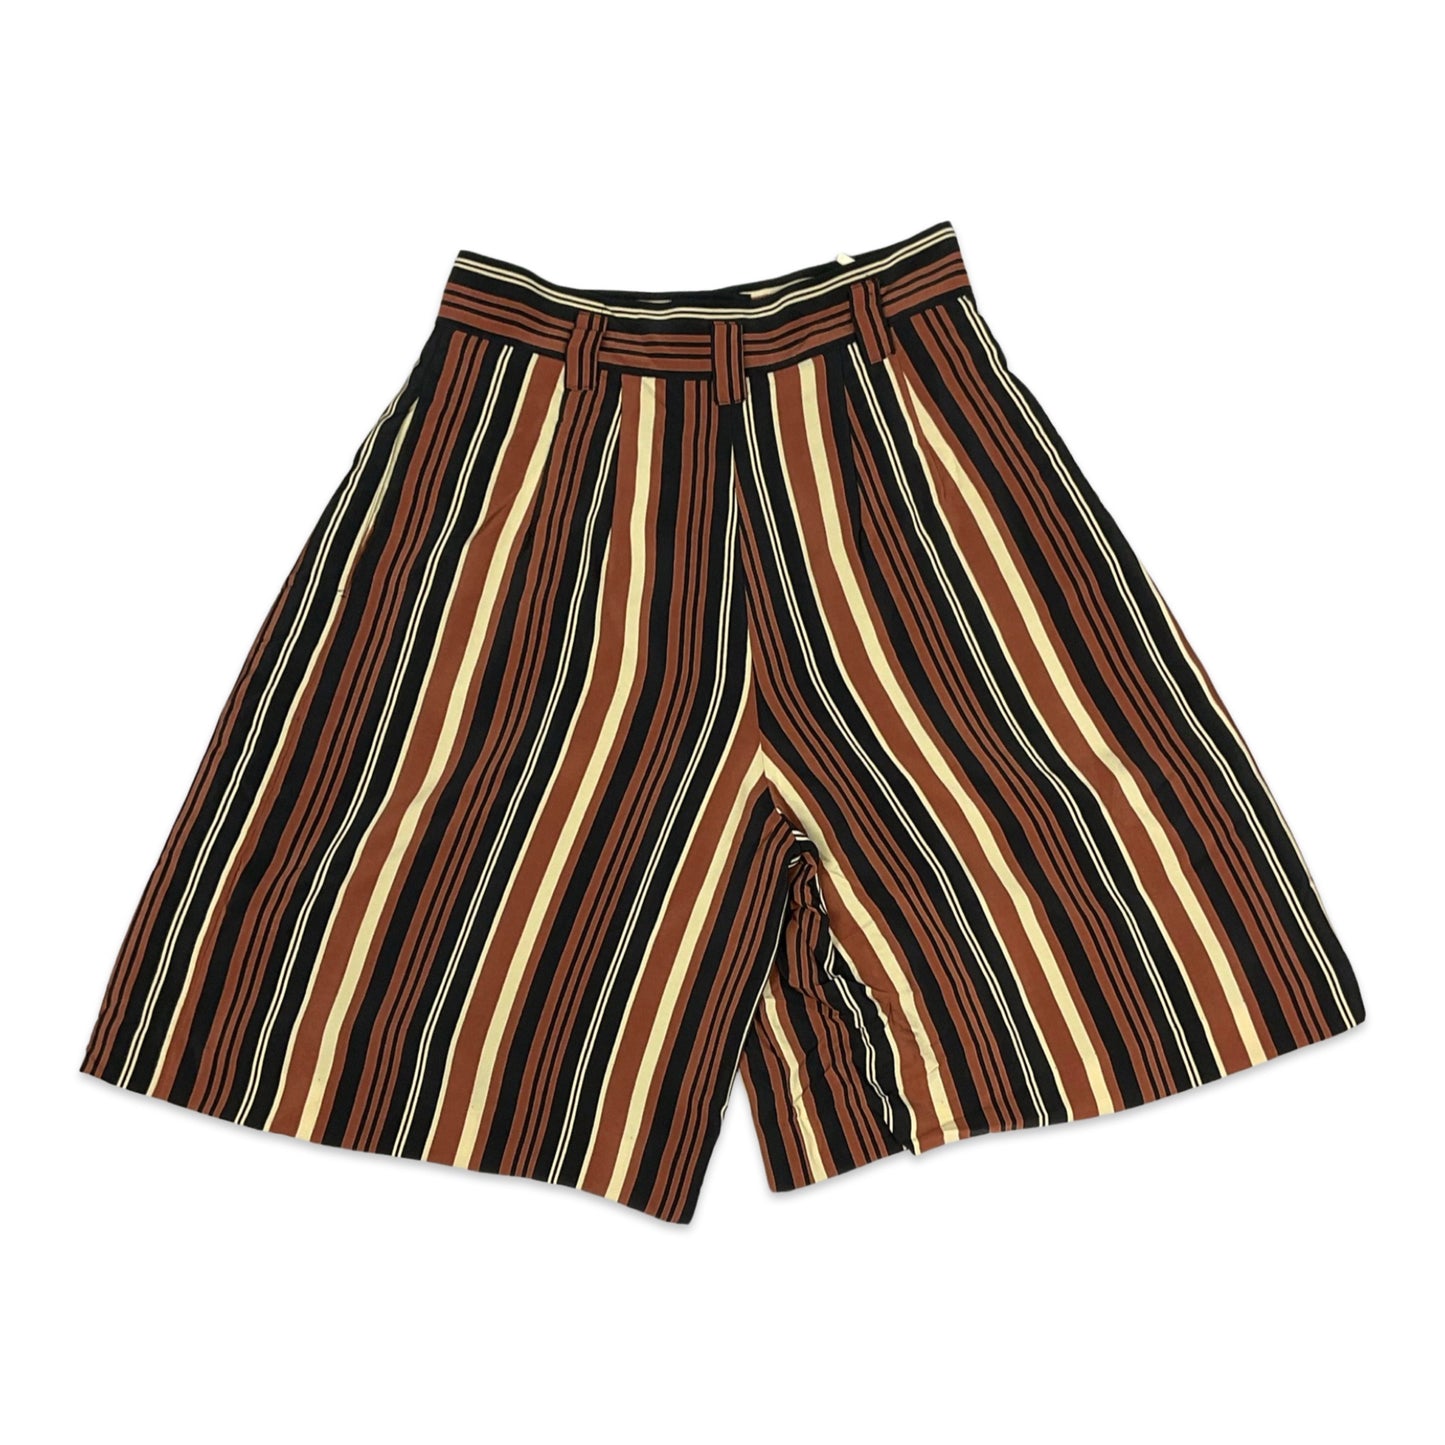 Vintage Beige Brown & Black Striped Shorts 10